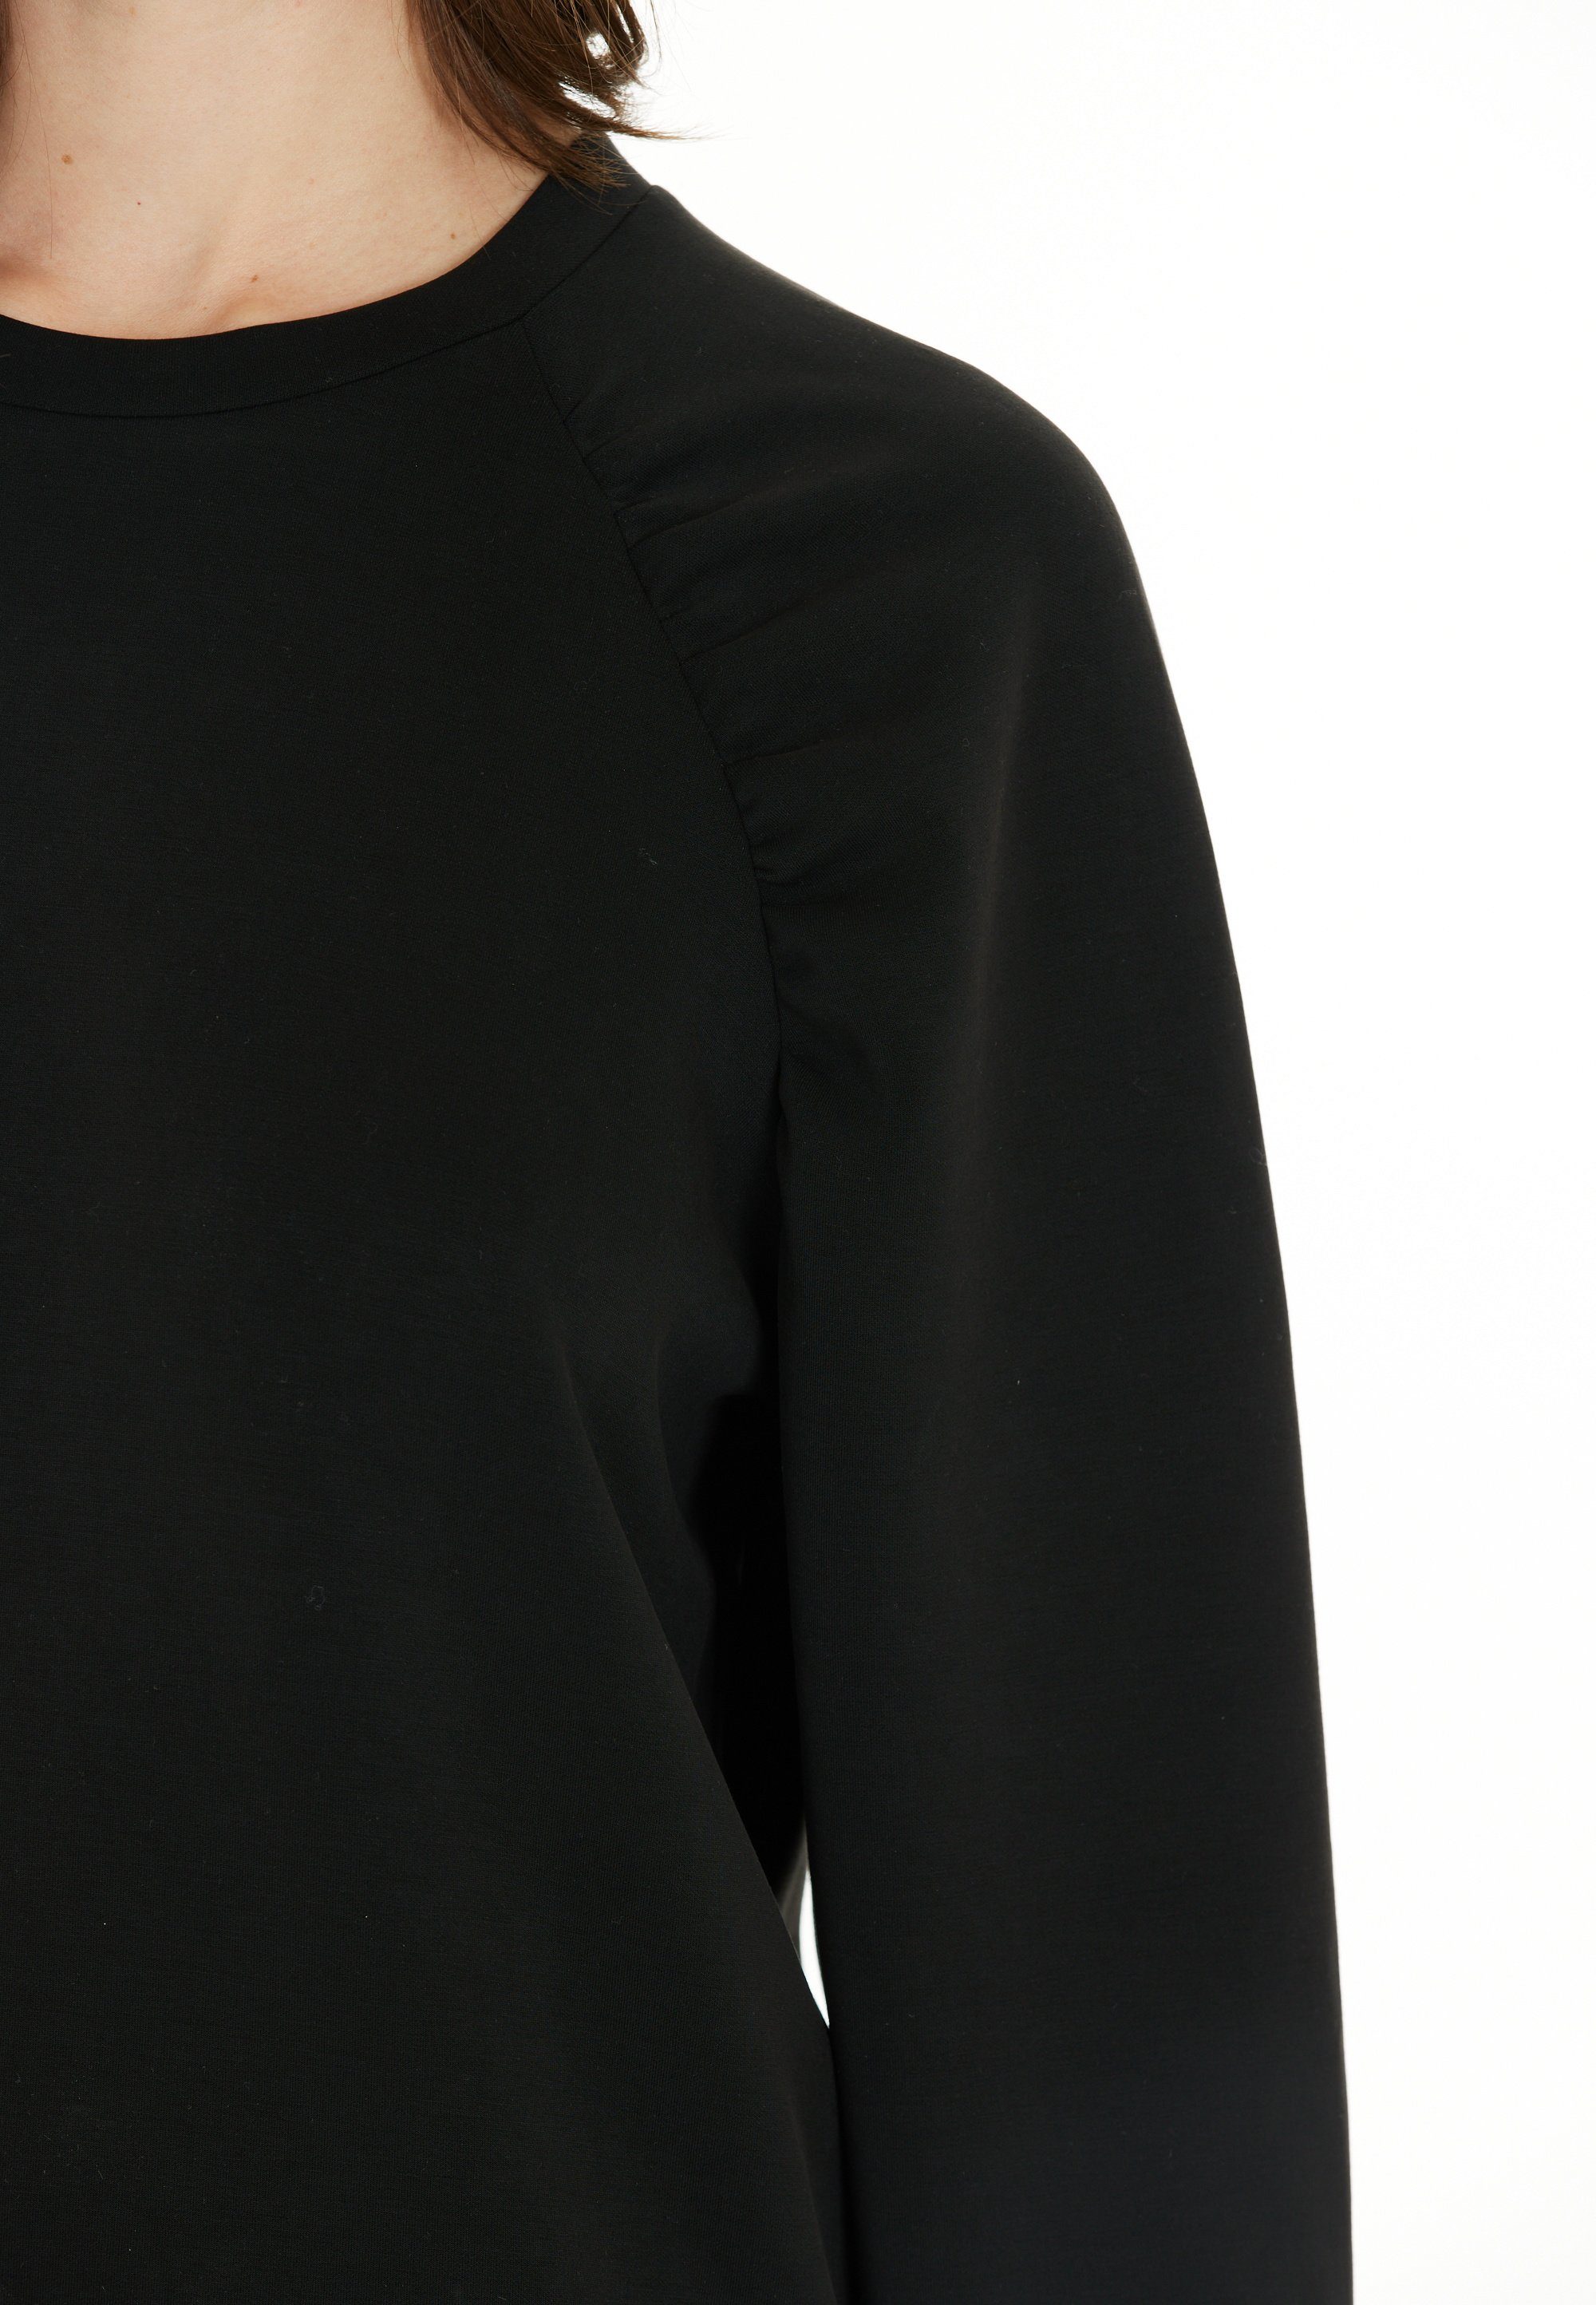 schlichtem ATHLECIA Design in schwarz Sweatshirt Jillnana